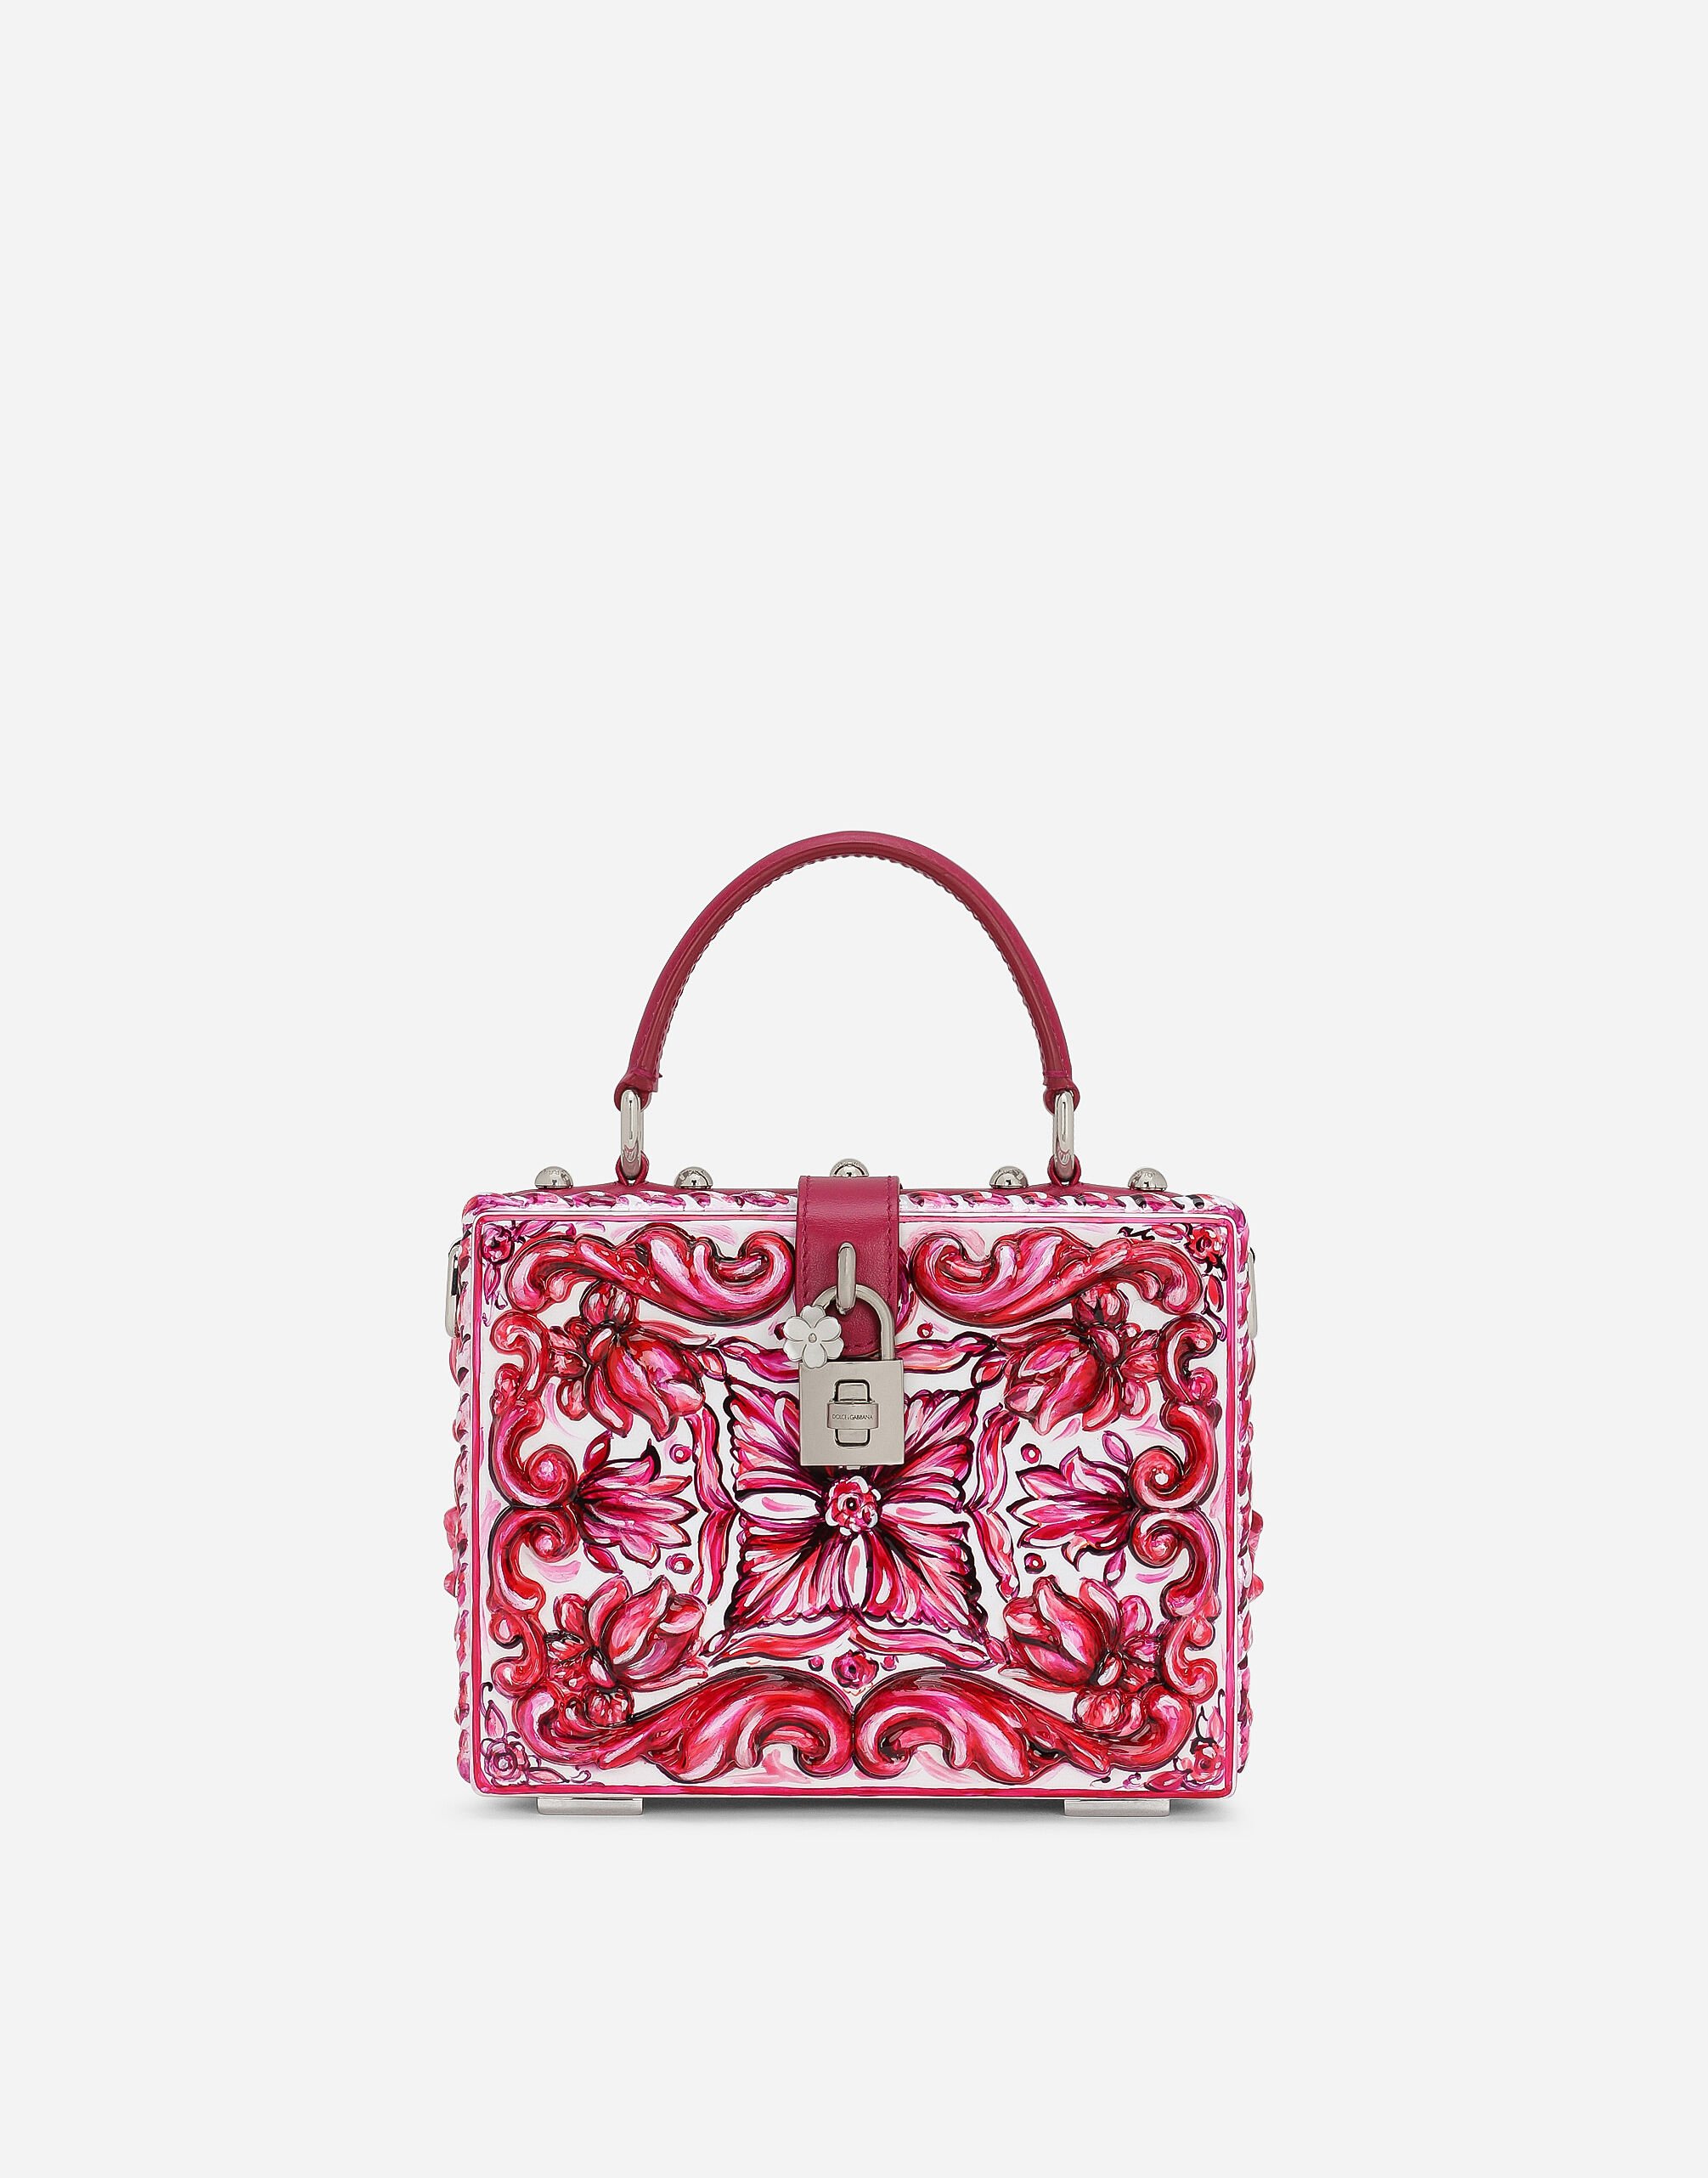 Dolce & Gabbana Dolce box handbag Black BB7625AU640